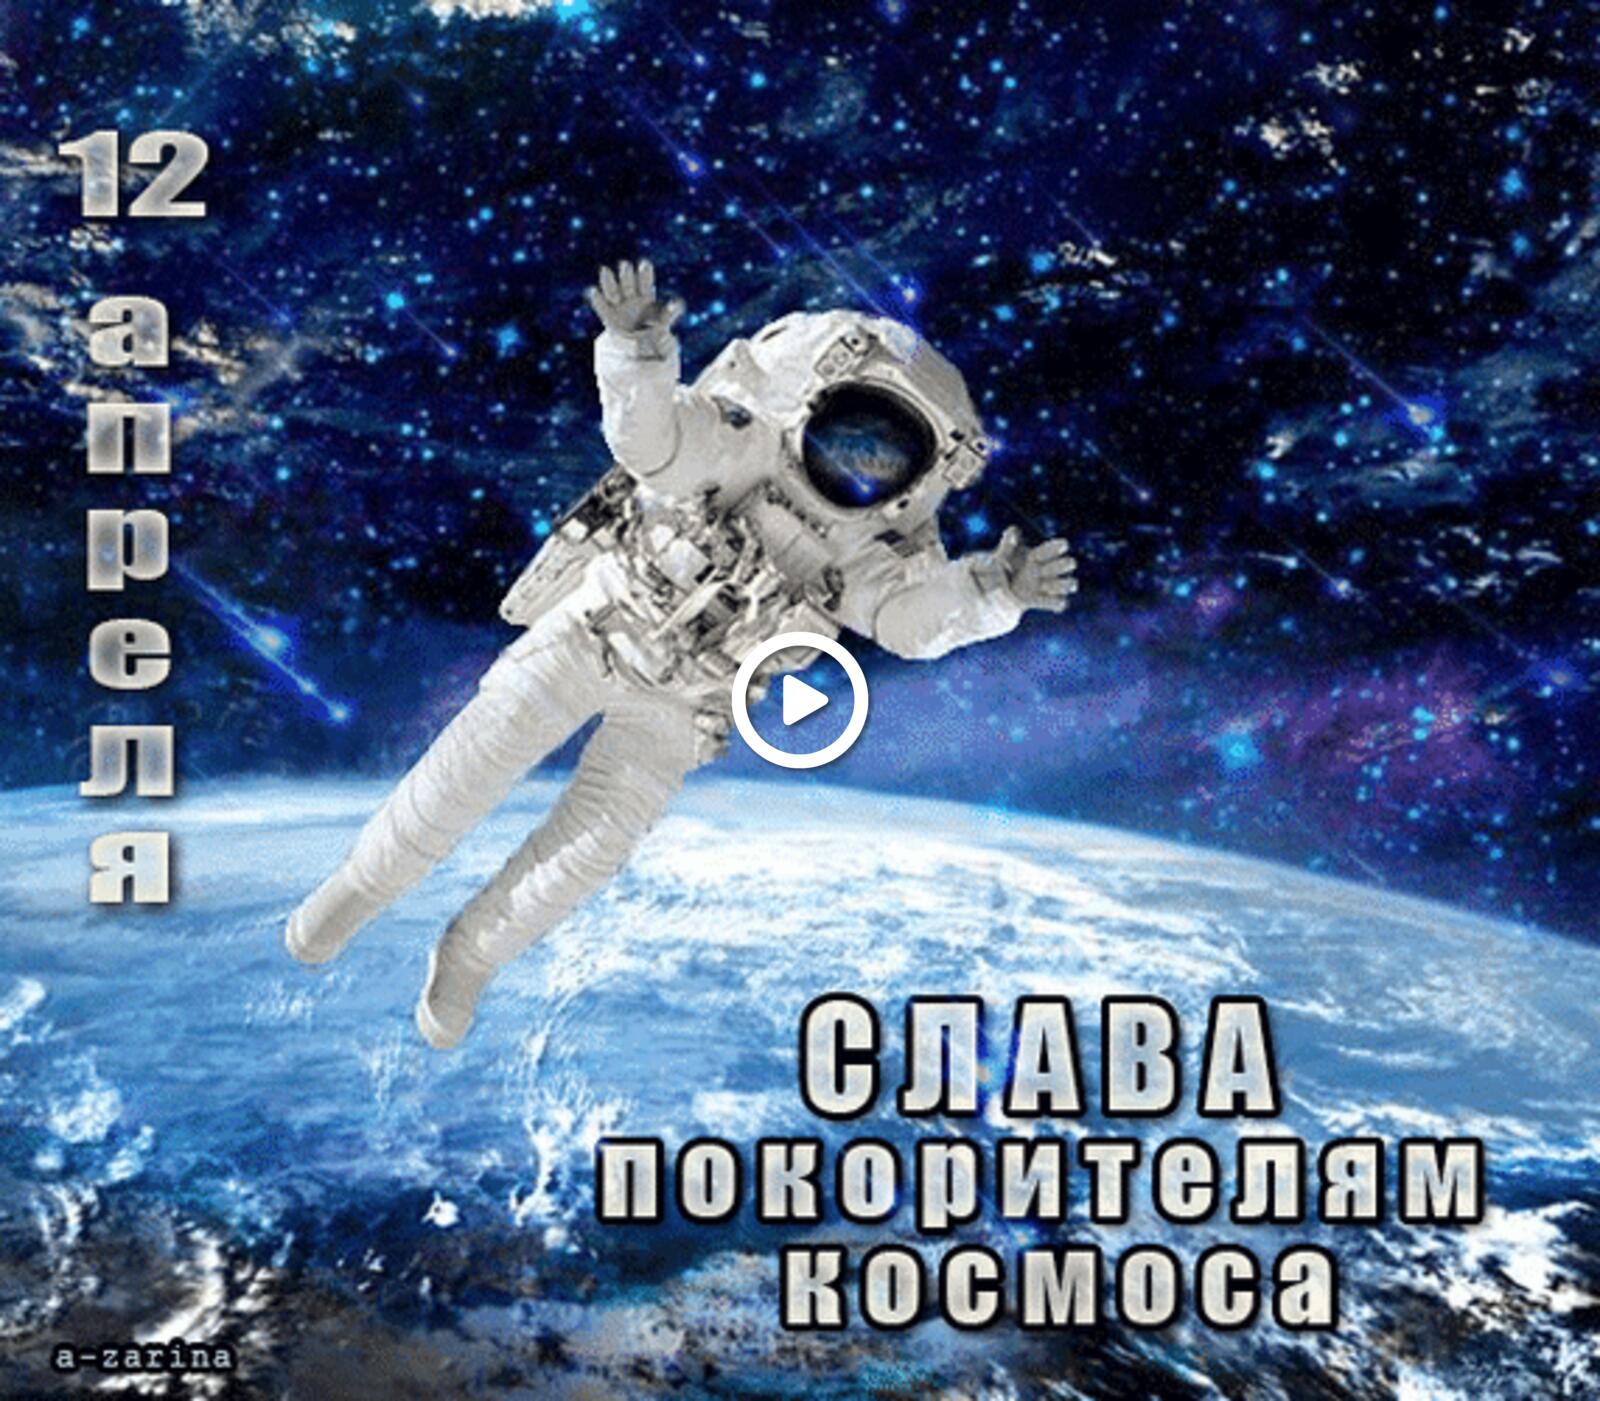 Открытка на тему 12 апреля космонавт космос бесплатно